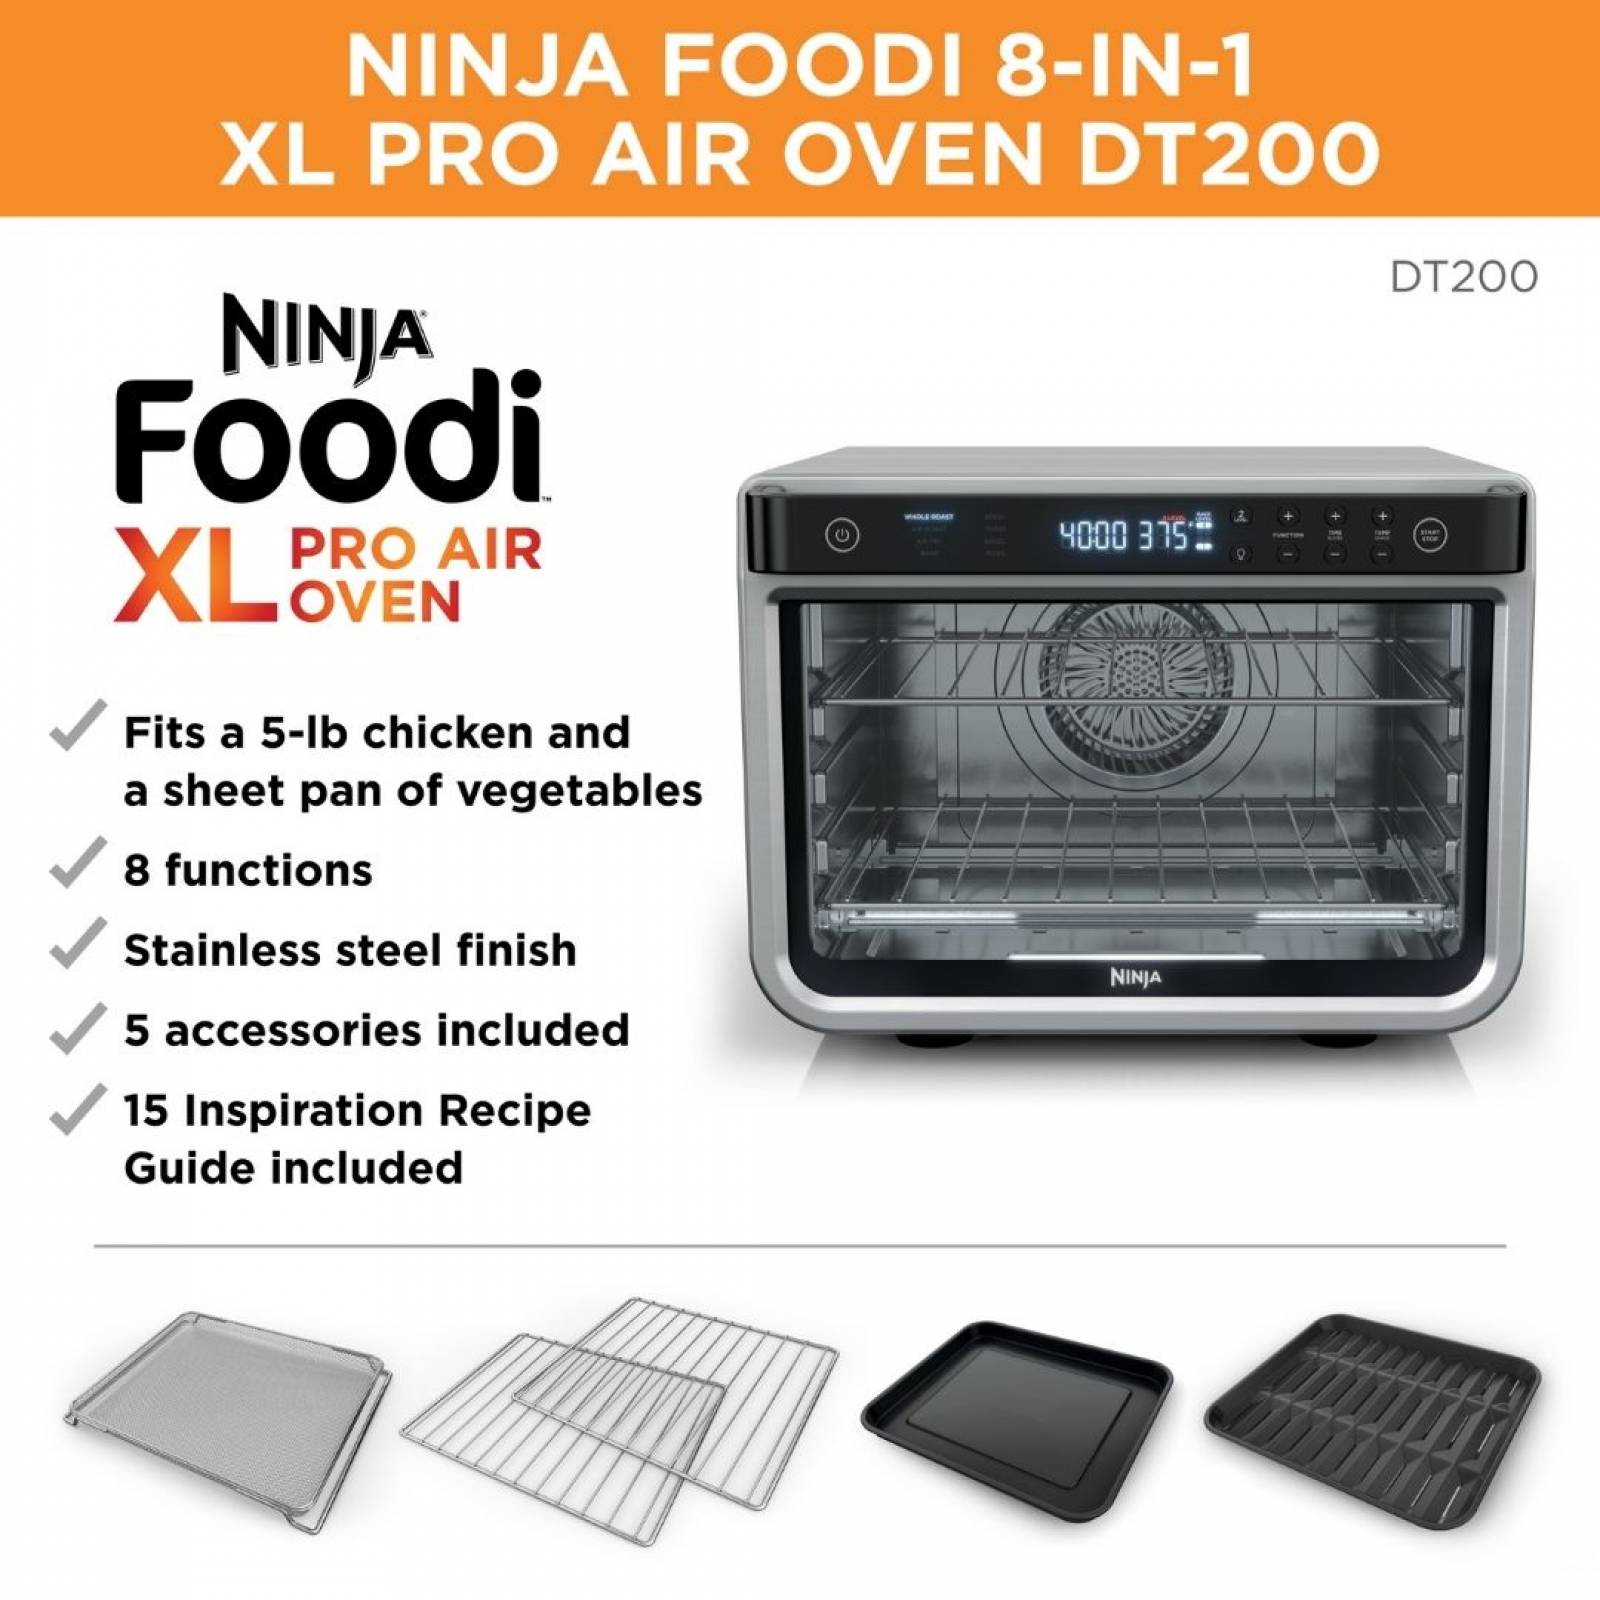 Ninja foodi 8 en 1 xl pro 1800w capacidad de hasta 2 pizzas de 12 pulgadas funciones de: asado entero freidora sin aceite asado sin aceite hornea